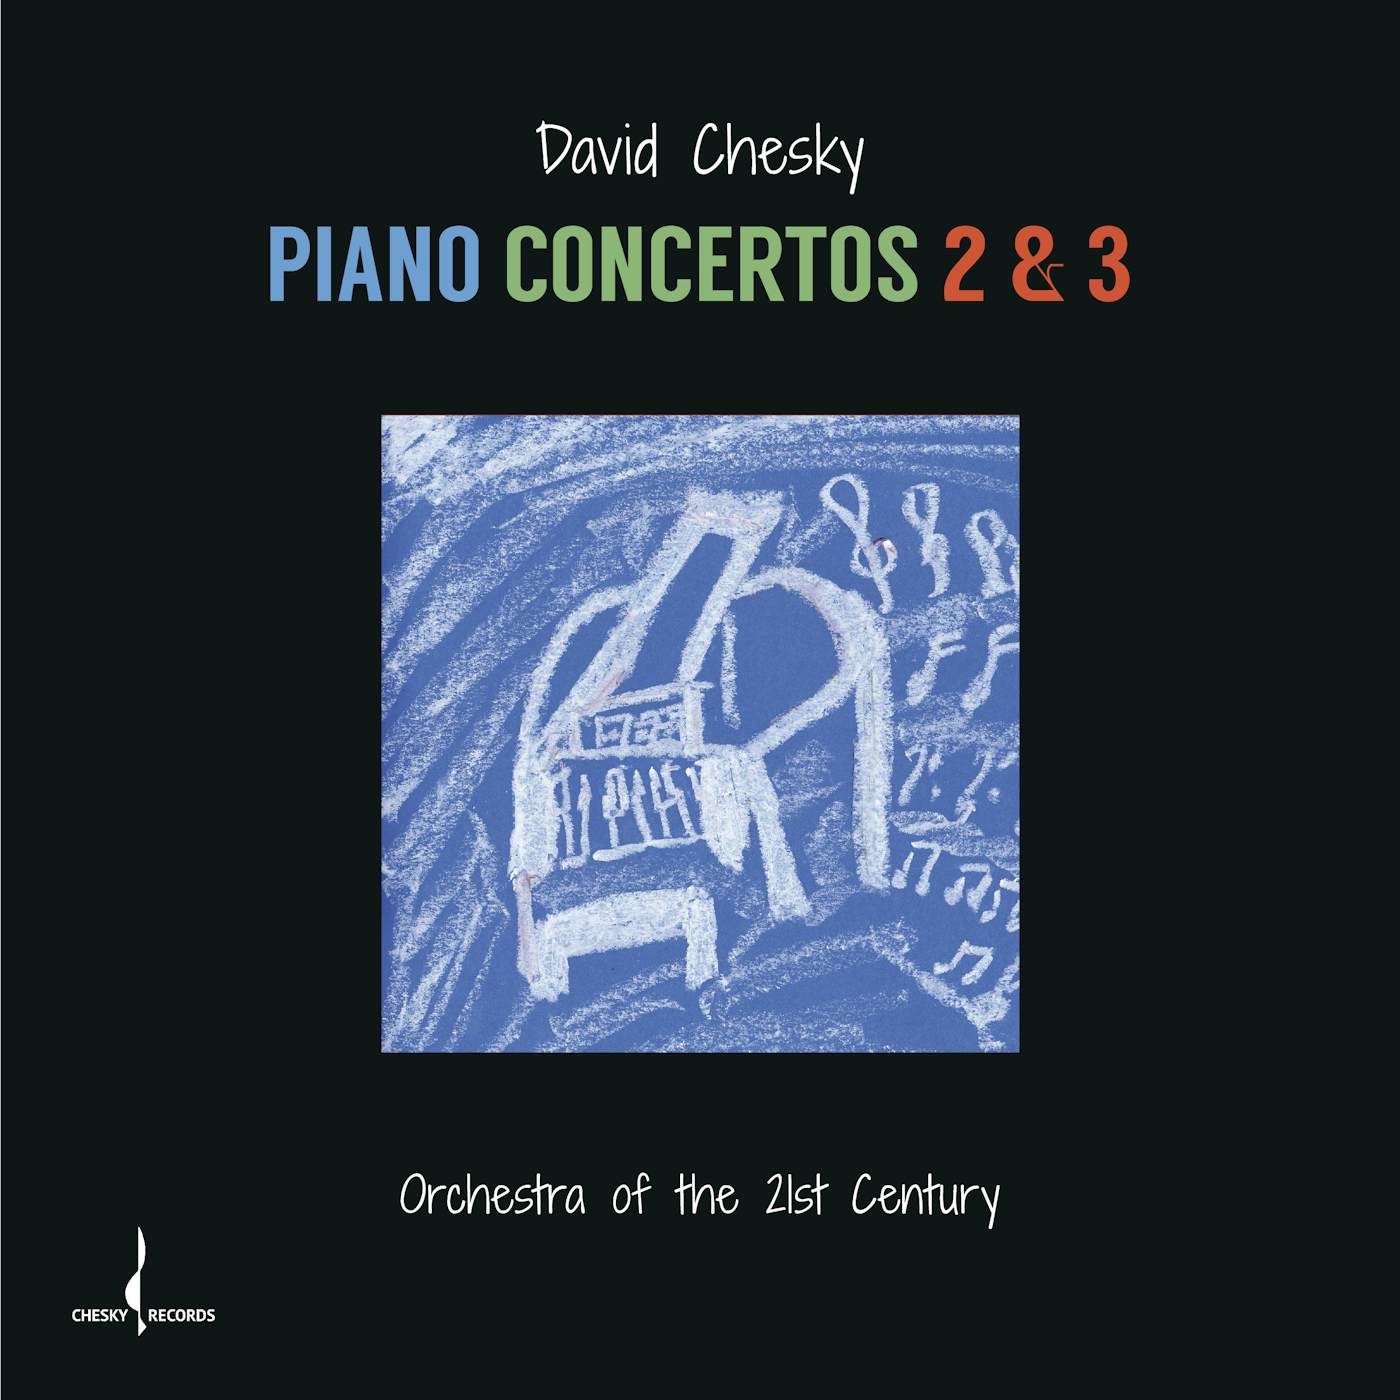 David Chesky PIANO CONCERTOS 2 & 3 CD